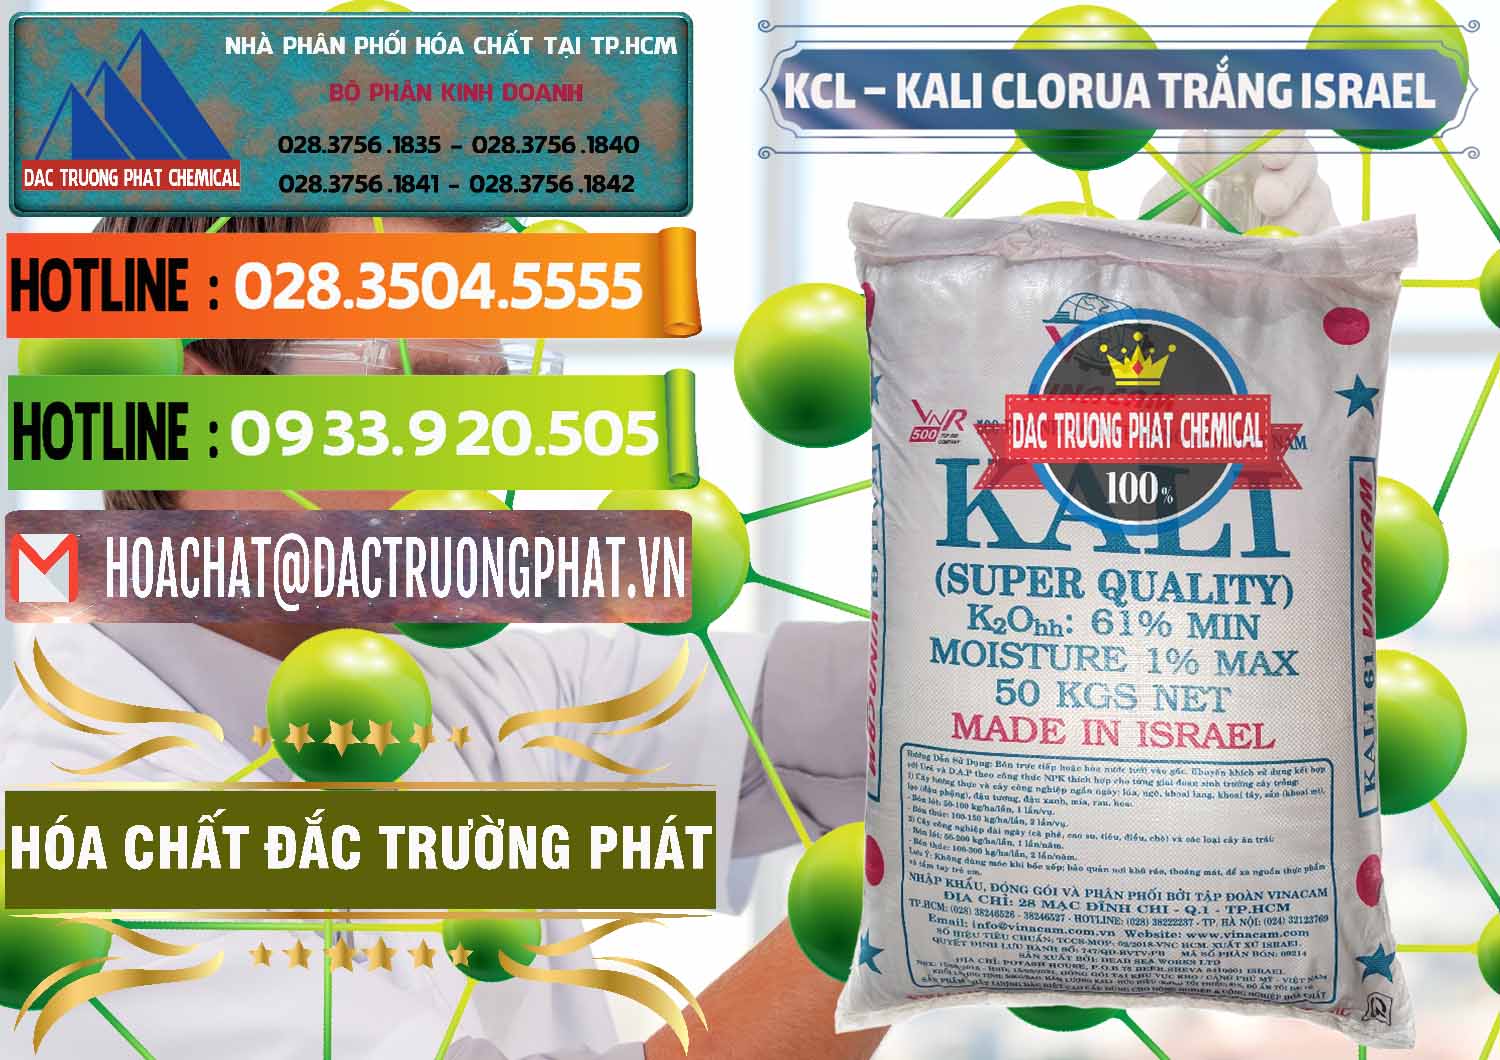 Nơi chuyên phân phối _ bán KCL – Kali Clorua Trắng Israel - 0087 - Chuyên phân phối _ kinh doanh hóa chất tại TP.HCM - cungcaphoachat.com.vn